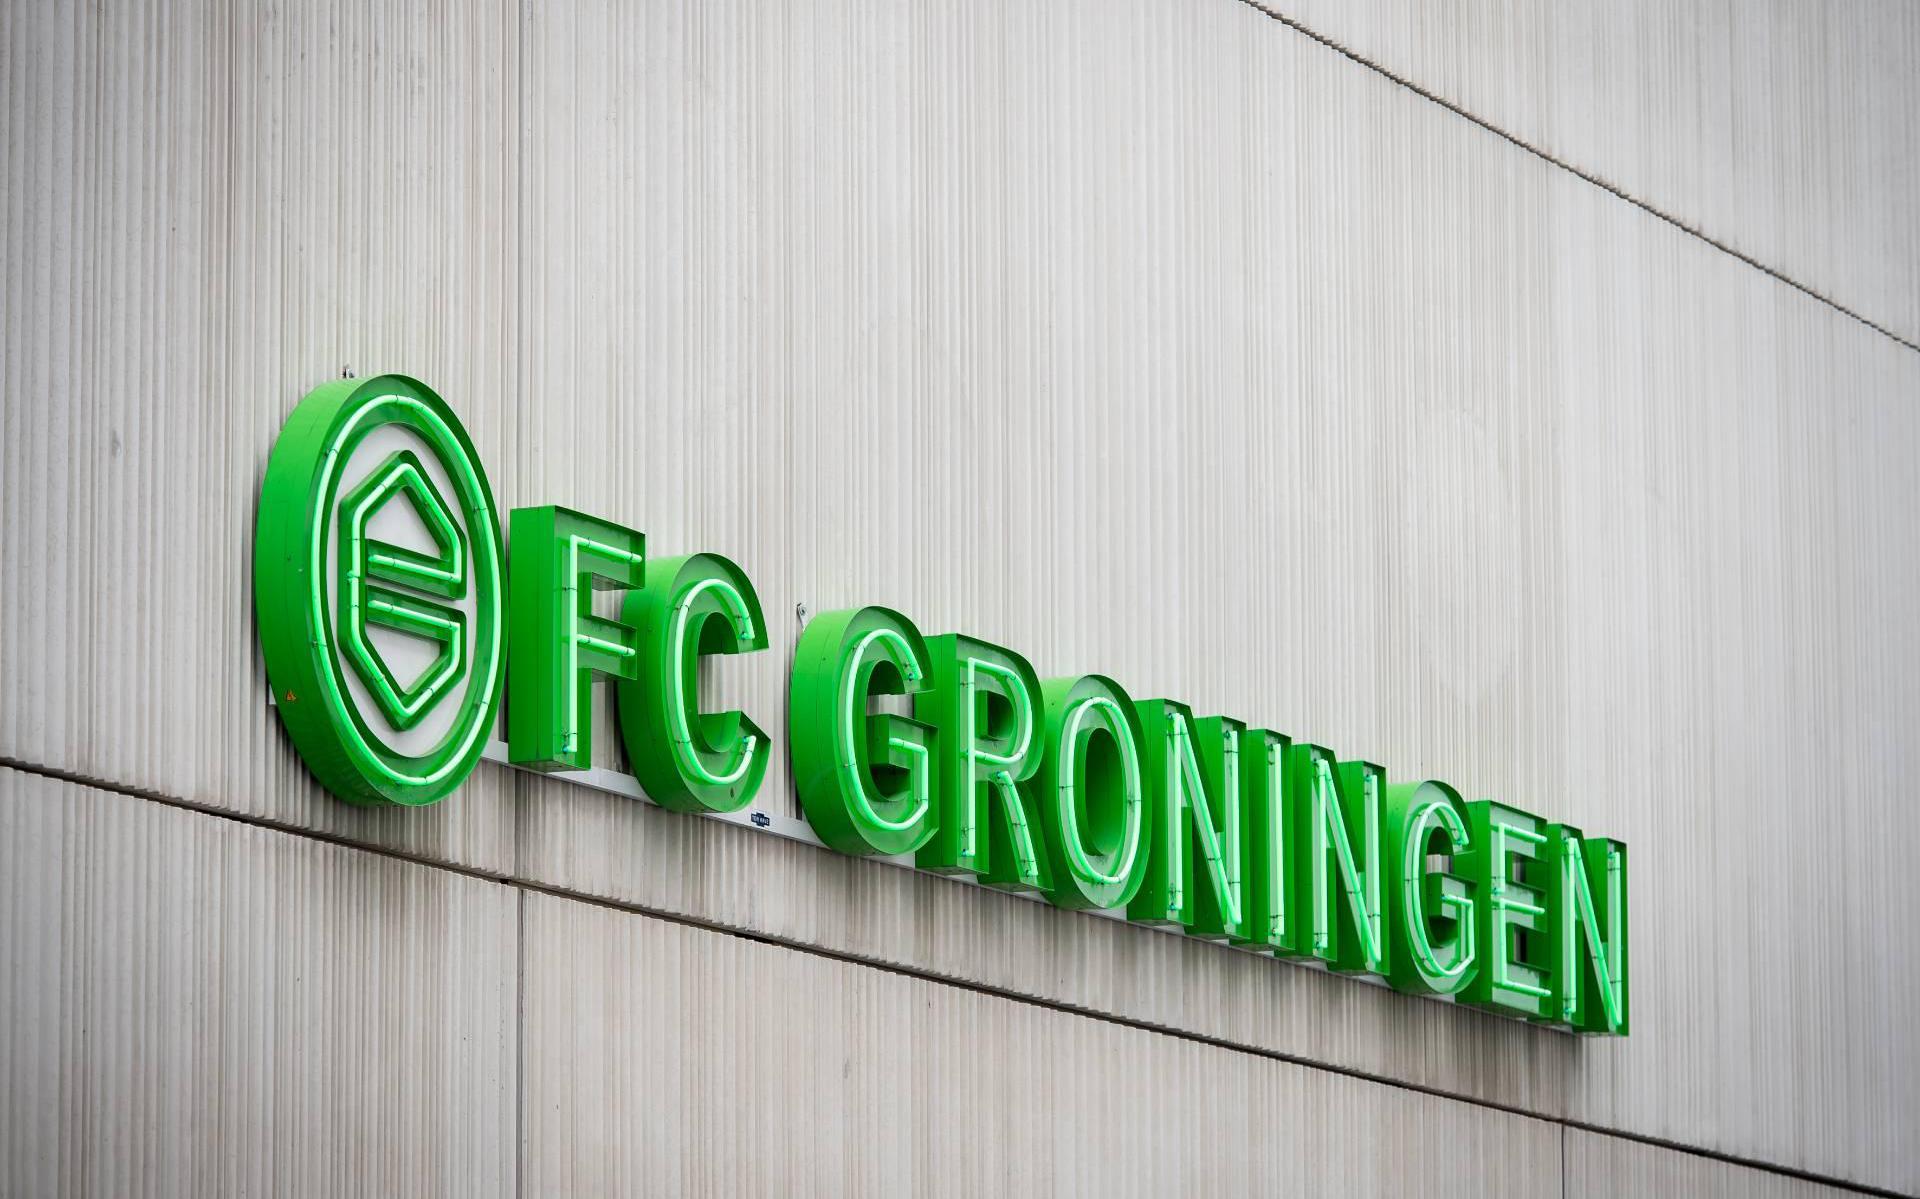 FC Groningen maakt ondanks coronacrisis toch winst